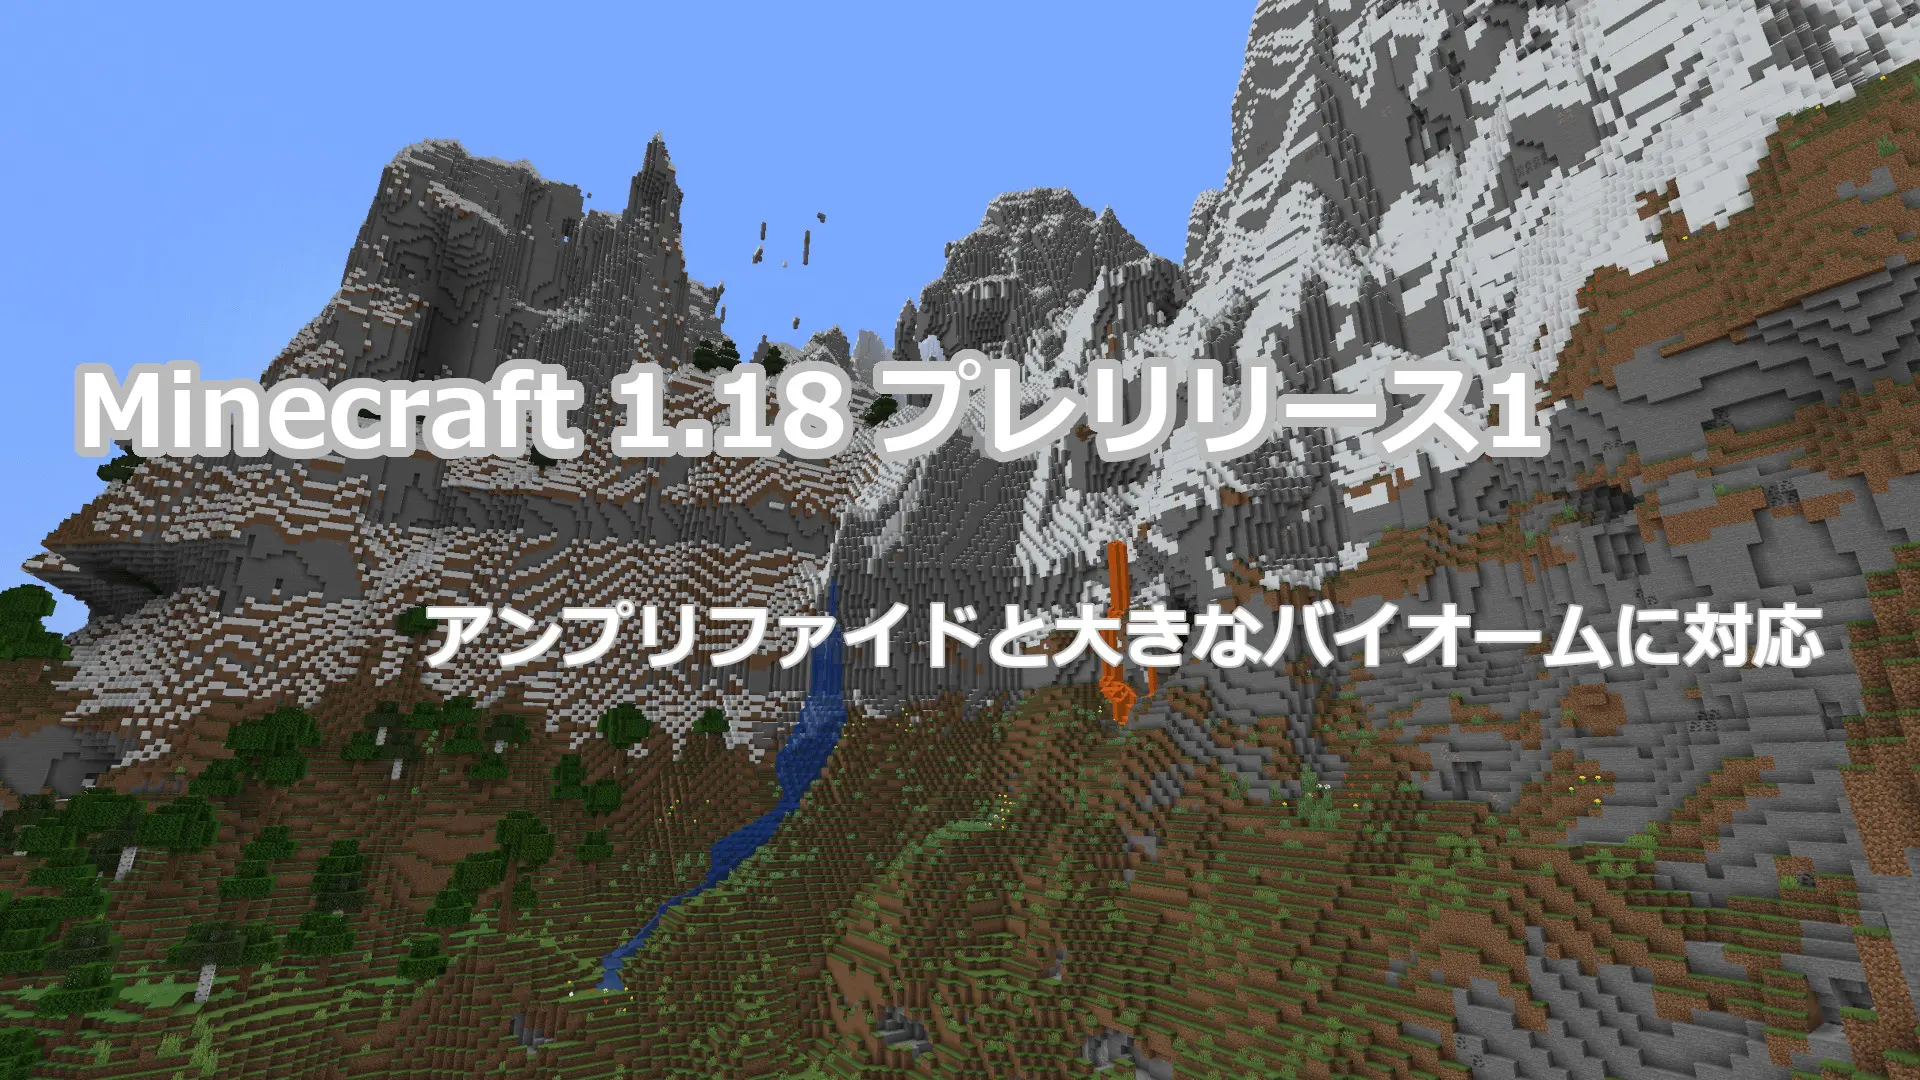 Minecraft 1 18リリースまであと少し プレリリース1アップデート情報 まいんくらふと みっくすじゅーす